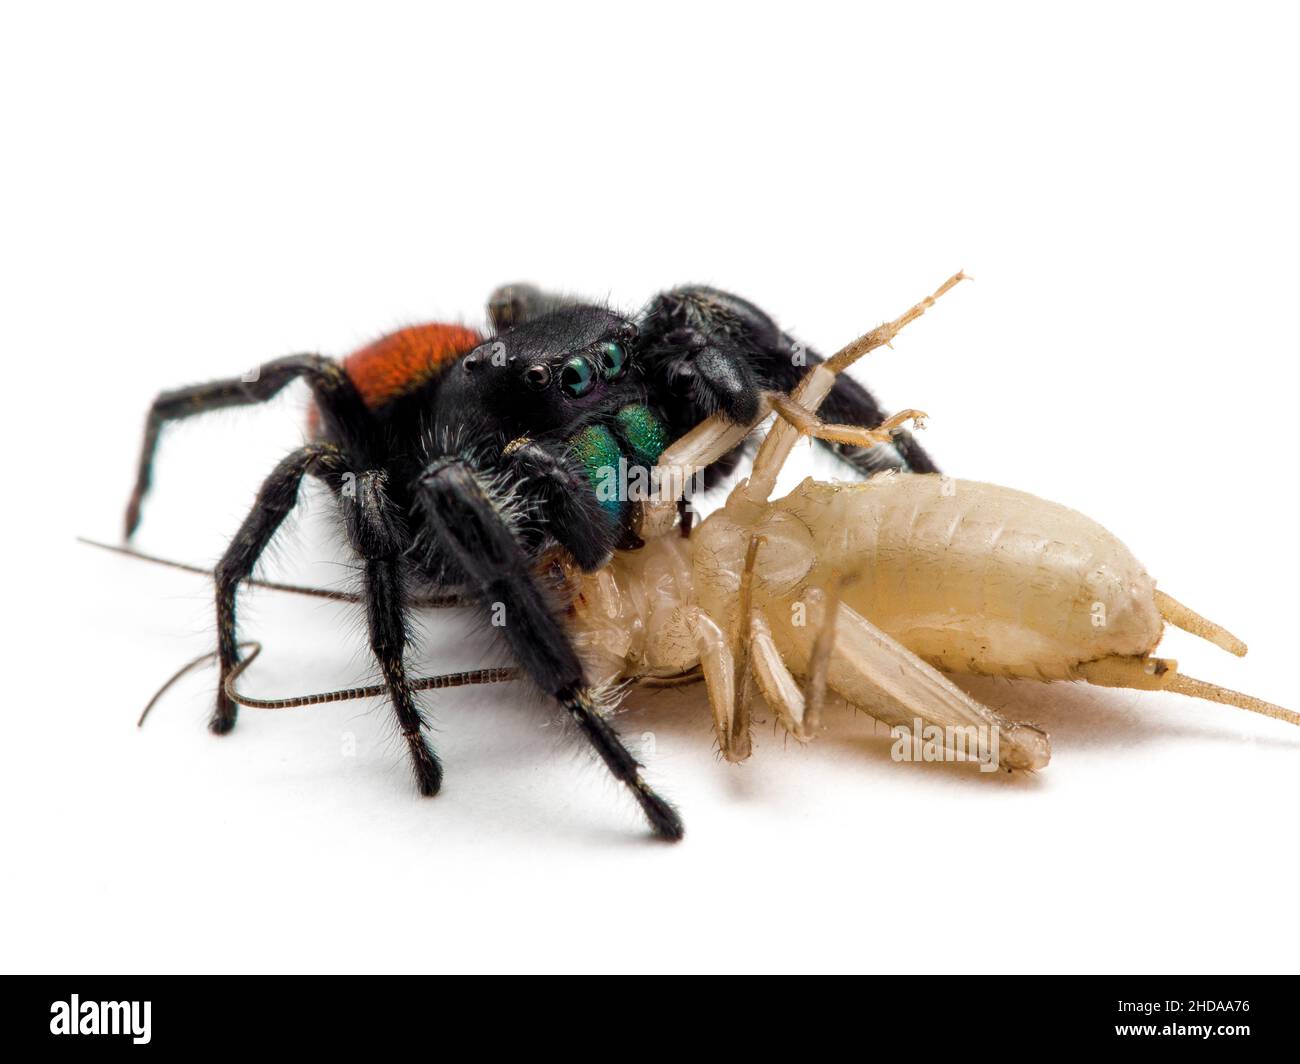 P6200266 männliche, rotrückige Spinne, Phiddipus johnsoni, an einer Cricket füttert, isoliert, CECP 2016 Stockfoto